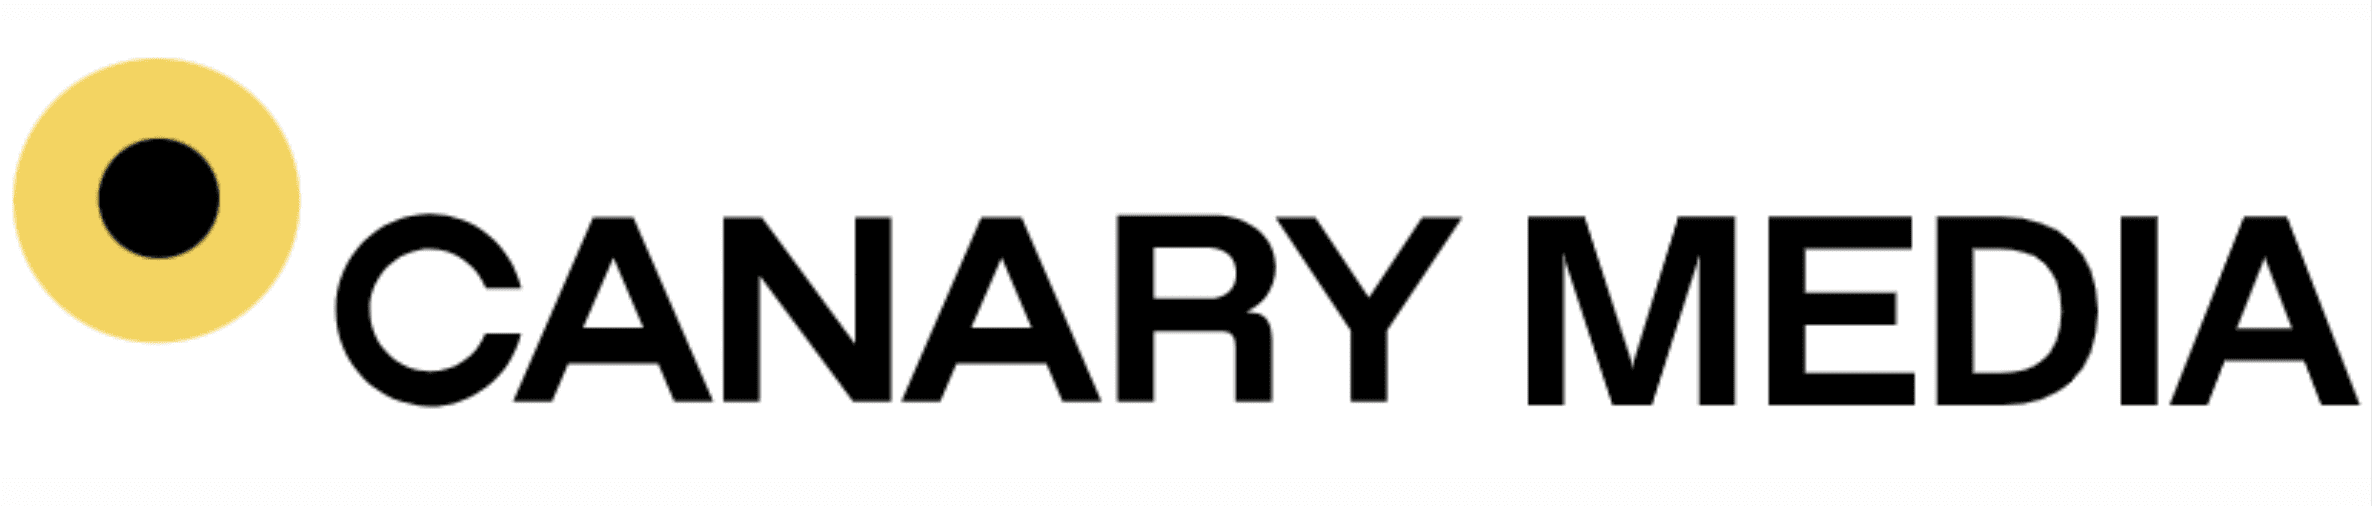 Canary Media logo